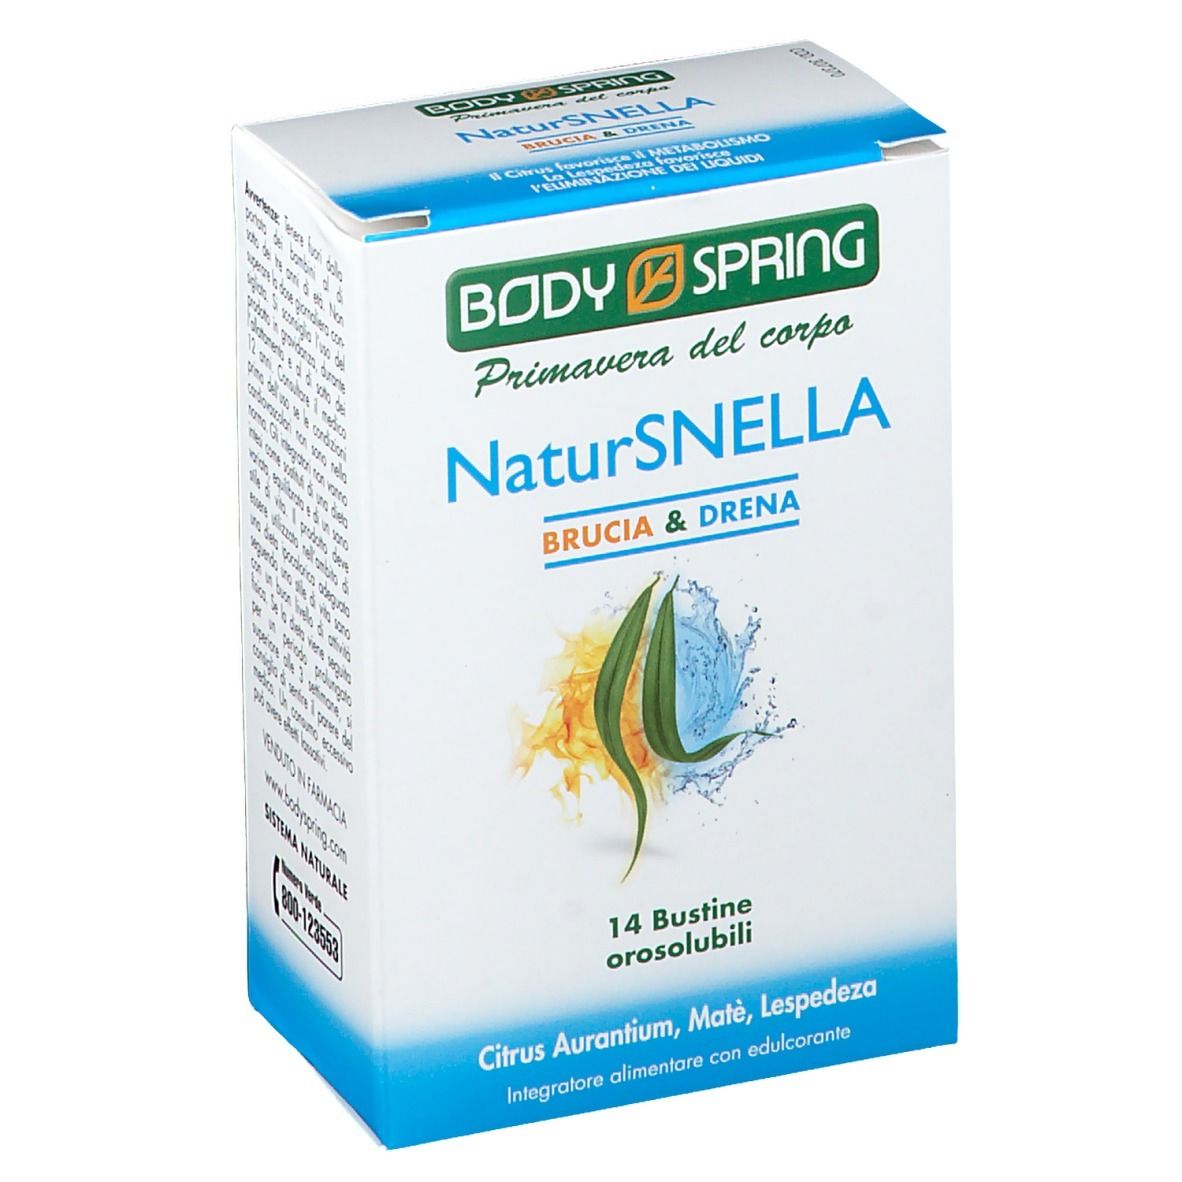 Body Spring NaturSnella Brucia & Drena